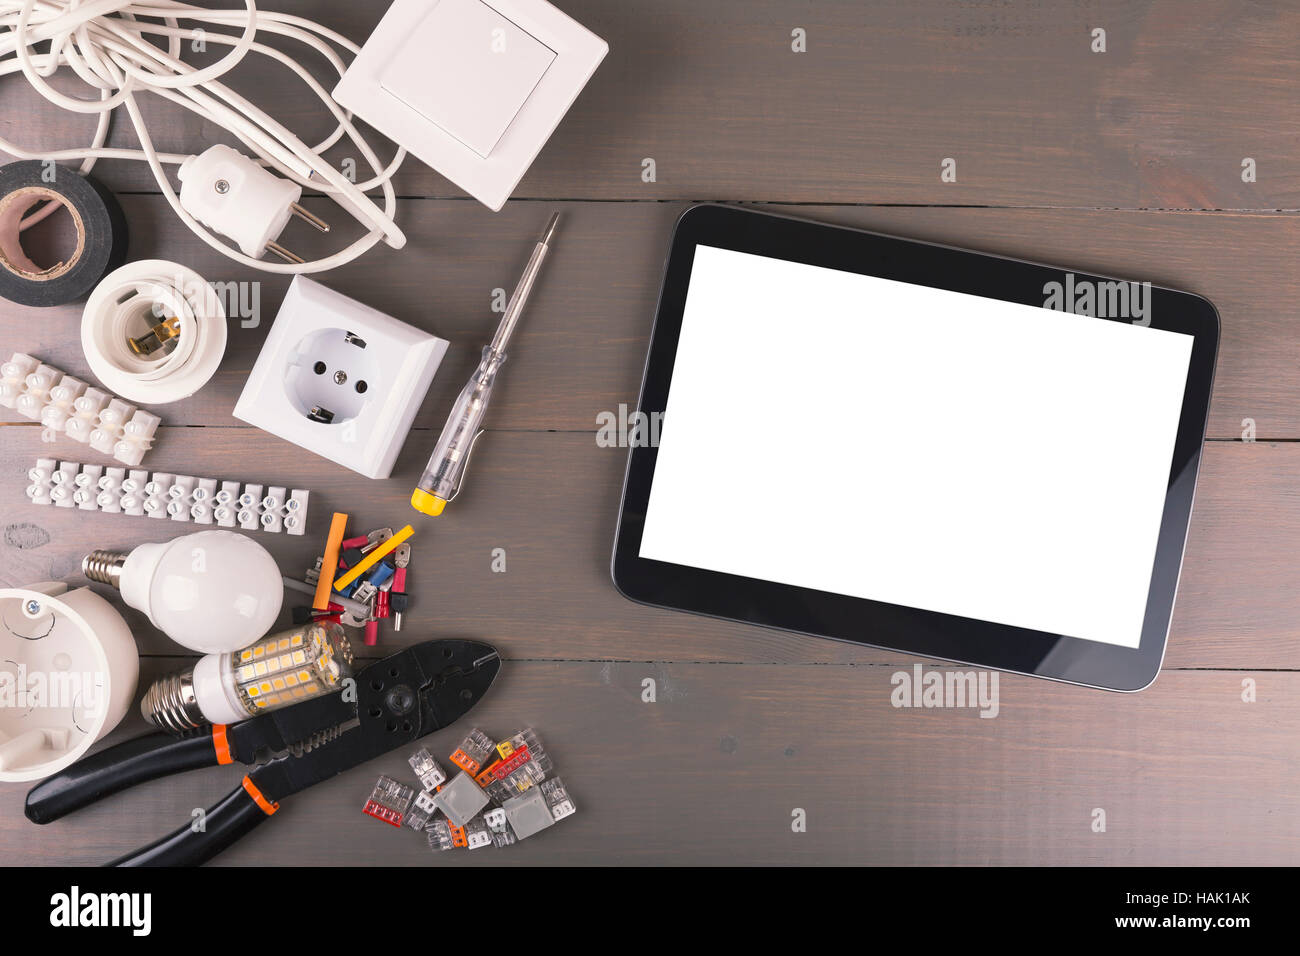 Tablette numérique vide avec des outils électriques et accessoires de table en bois Banque D'Images